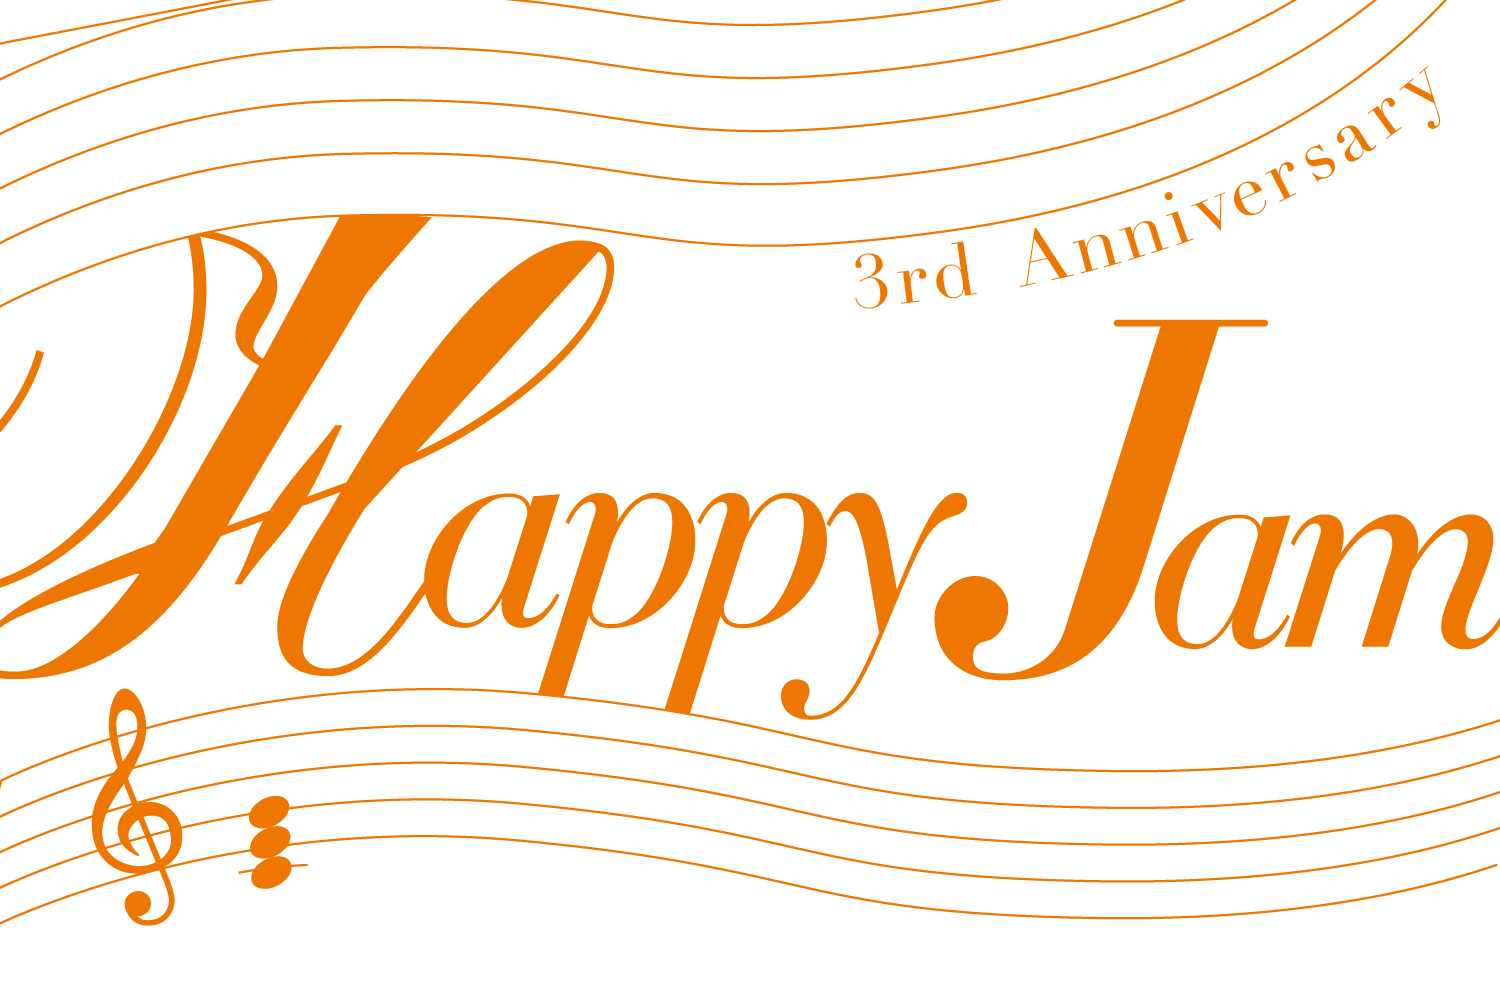 島村楽器株式会社（本社：東京都江戸川区、代表取締役社長：廣瀬 利明、以下 島村楽器）が運営する音楽生活応援WEBメディア『Happy Jam（ハッピージャム）』がこの9月で3周年を……